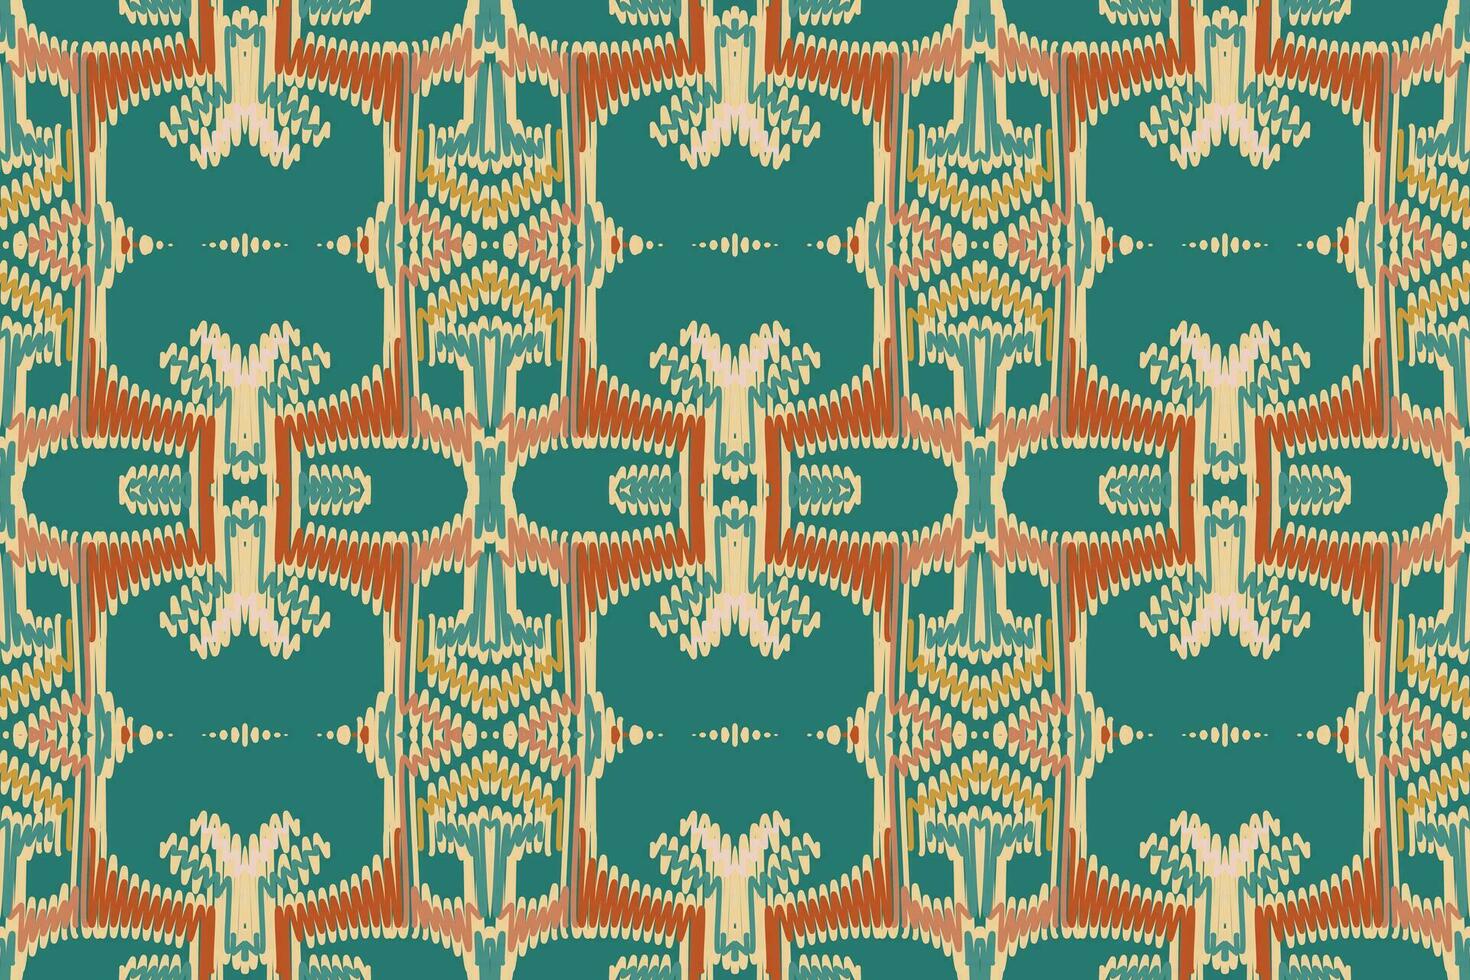 lapwerk patroon naadloos Scandinavisch patroon motief borduurwerk, ikat borduurwerk vector ontwerp voor afdrukken Egyptische patroon Tibetaans mandala bandana